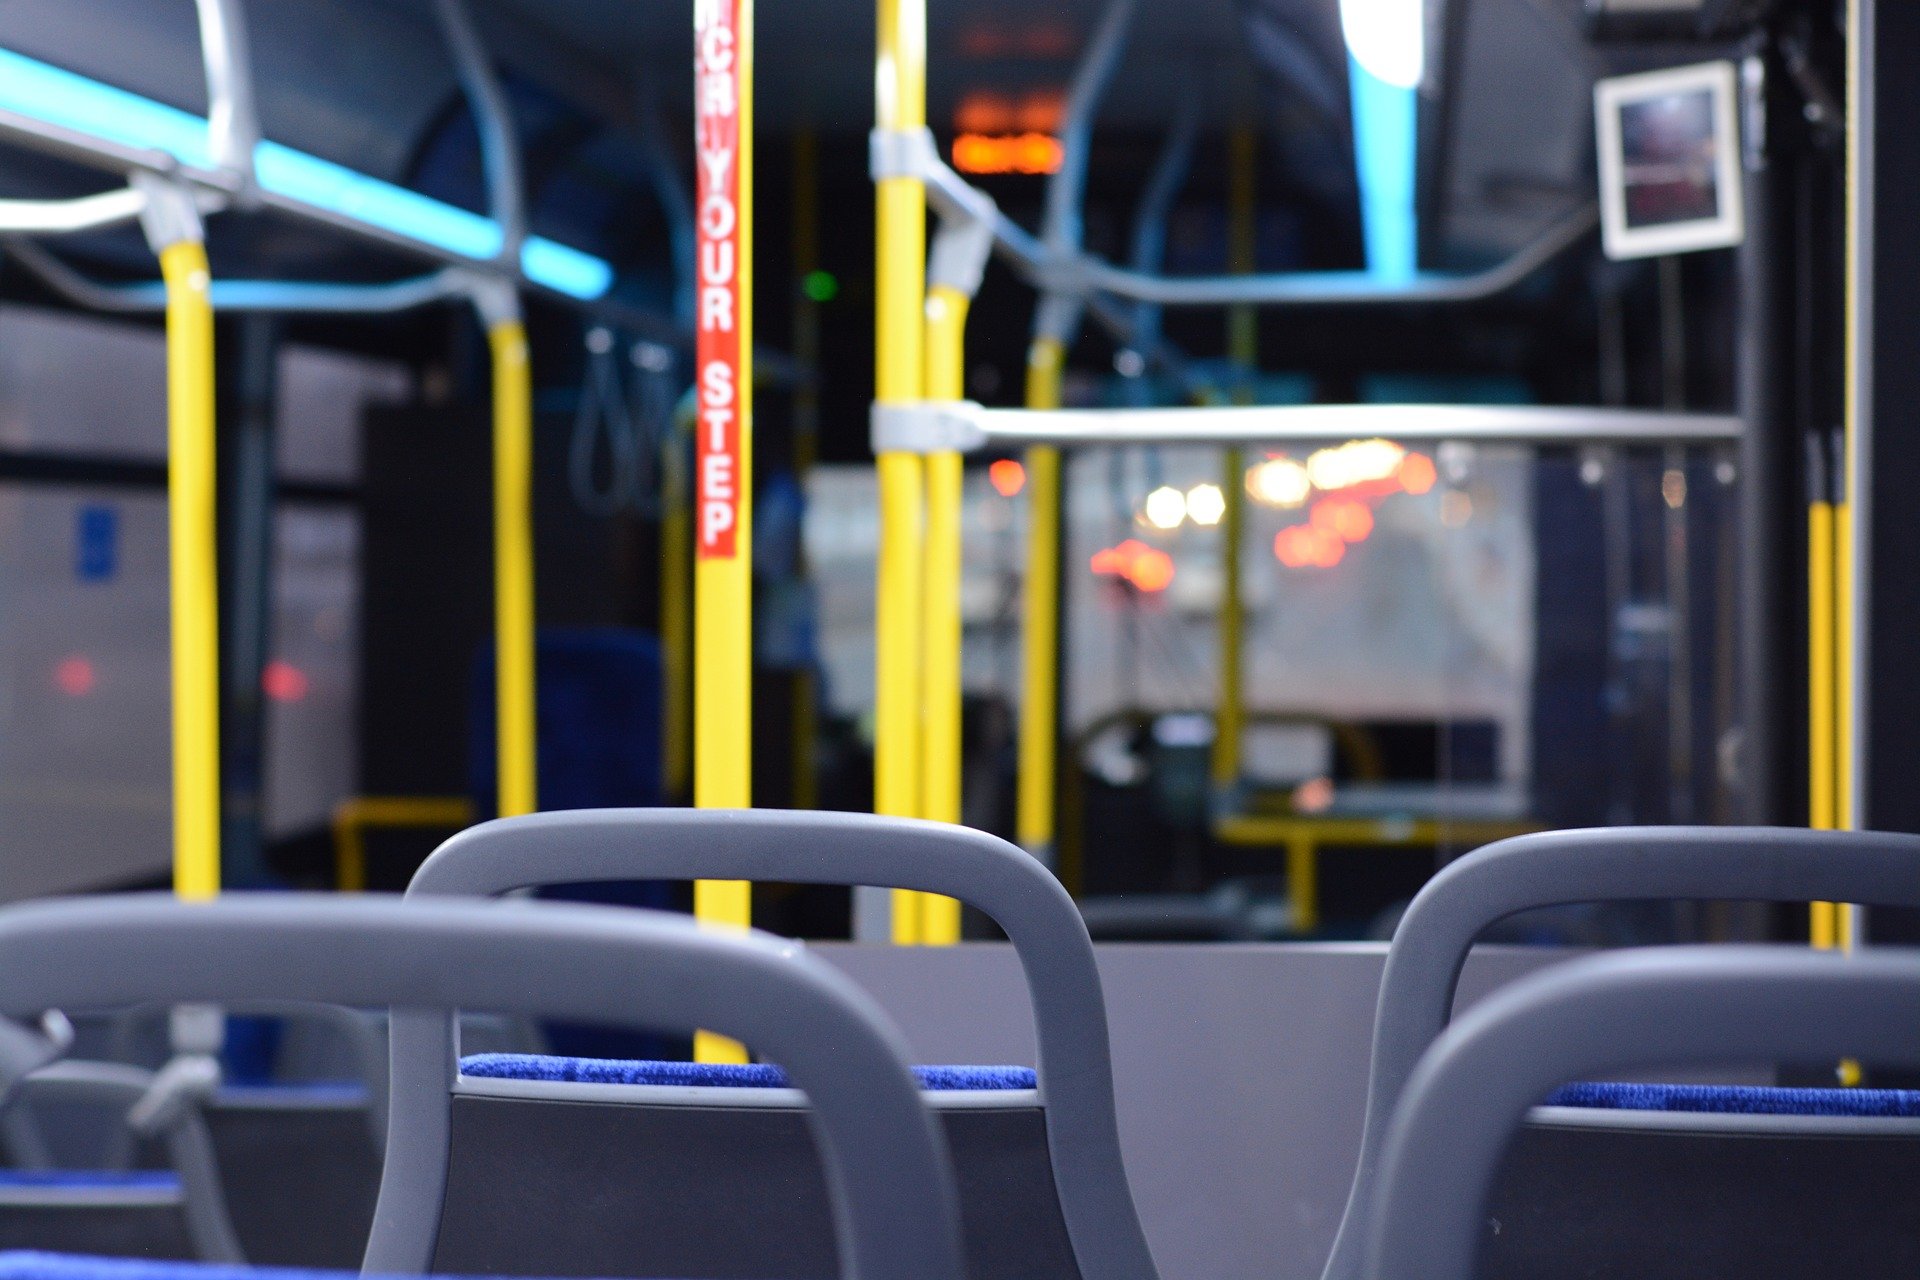 Ещё 58 низкопольных автобусов выйдут на 3 воронежских маршрута после 1 апреля - фото 1